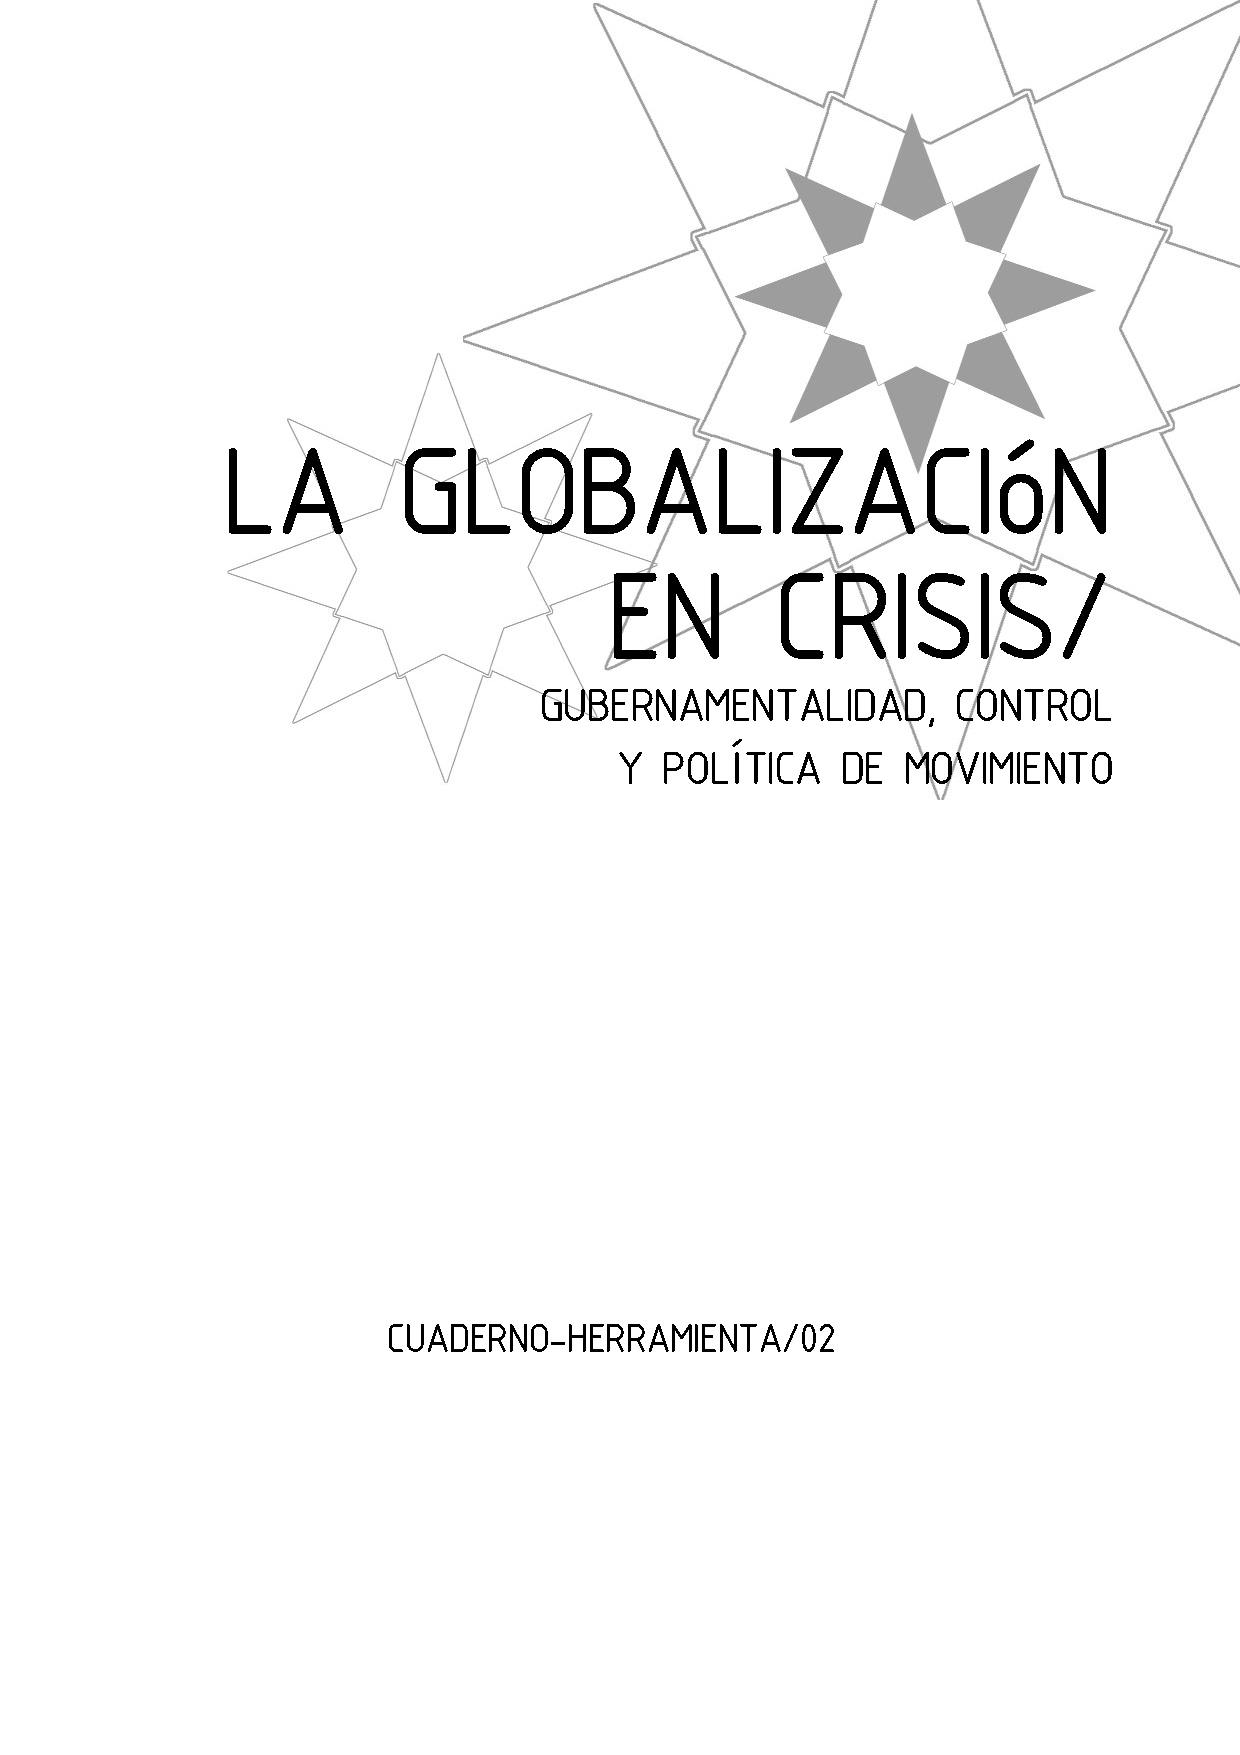 Imagen de portada del libro La globalización en crisis. Gubernamentalidad, control y política de movimiento.